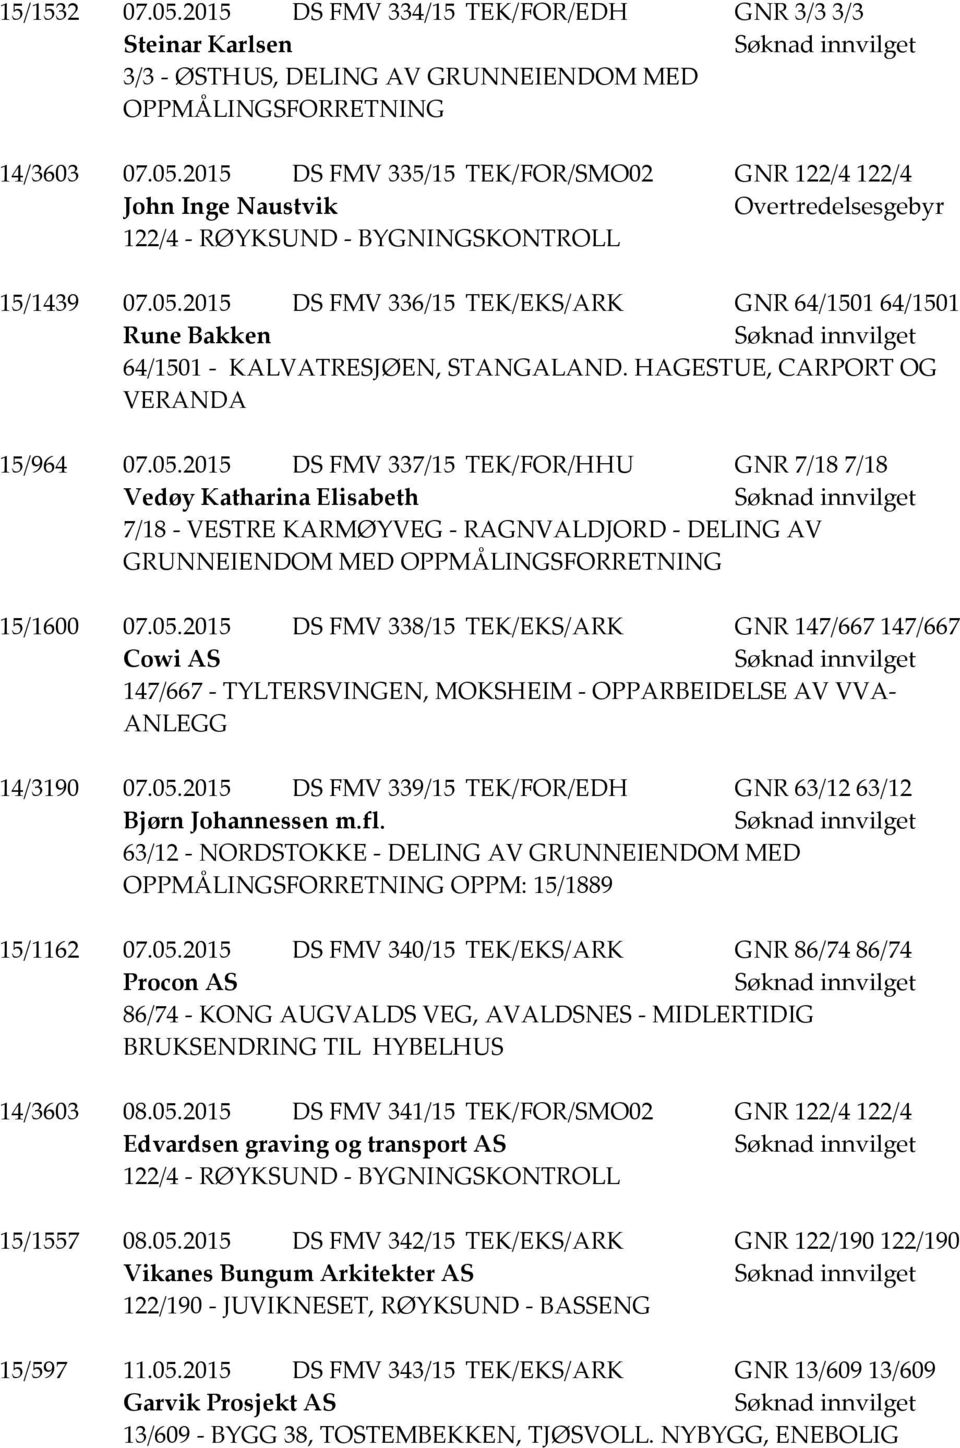 05.2015 DS FMV 338/15 TEK/EKS/ARK GNR 147/667 147/667 Cowi AS 147/667 - TYLTERSVINGEN, MOKSHEIM - OPPARBEIDELSE AV VVA- ANLEGG 14/3190 07.05.2015 DS FMV 339/15 TEK/FOR/EDH GNR 63/12 63/12 Bjørn Johannessen m.